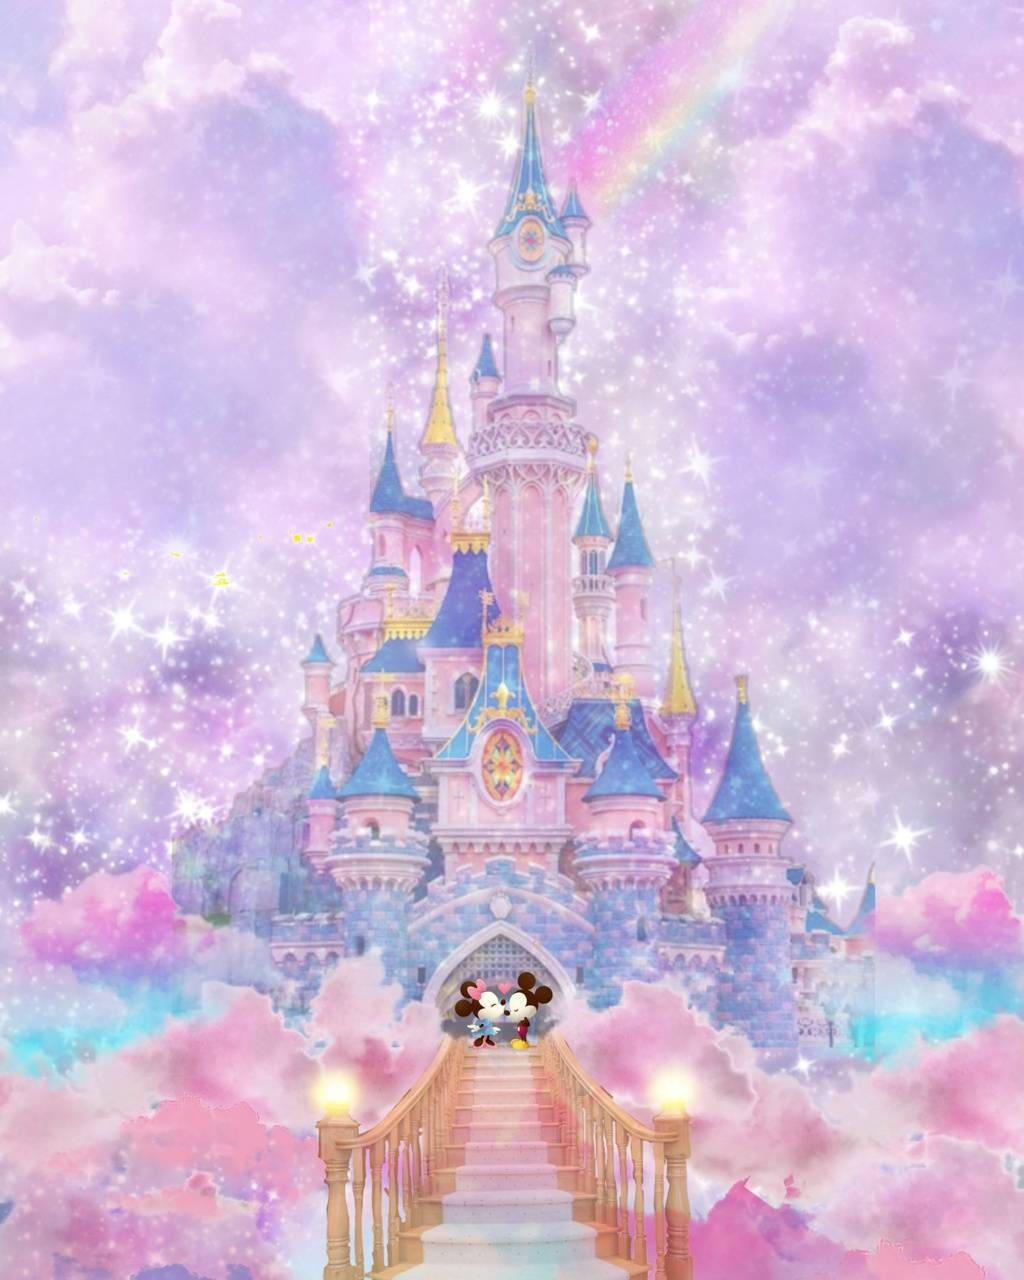 Galaxtemaför Disneyland-slottet. Wallpaper